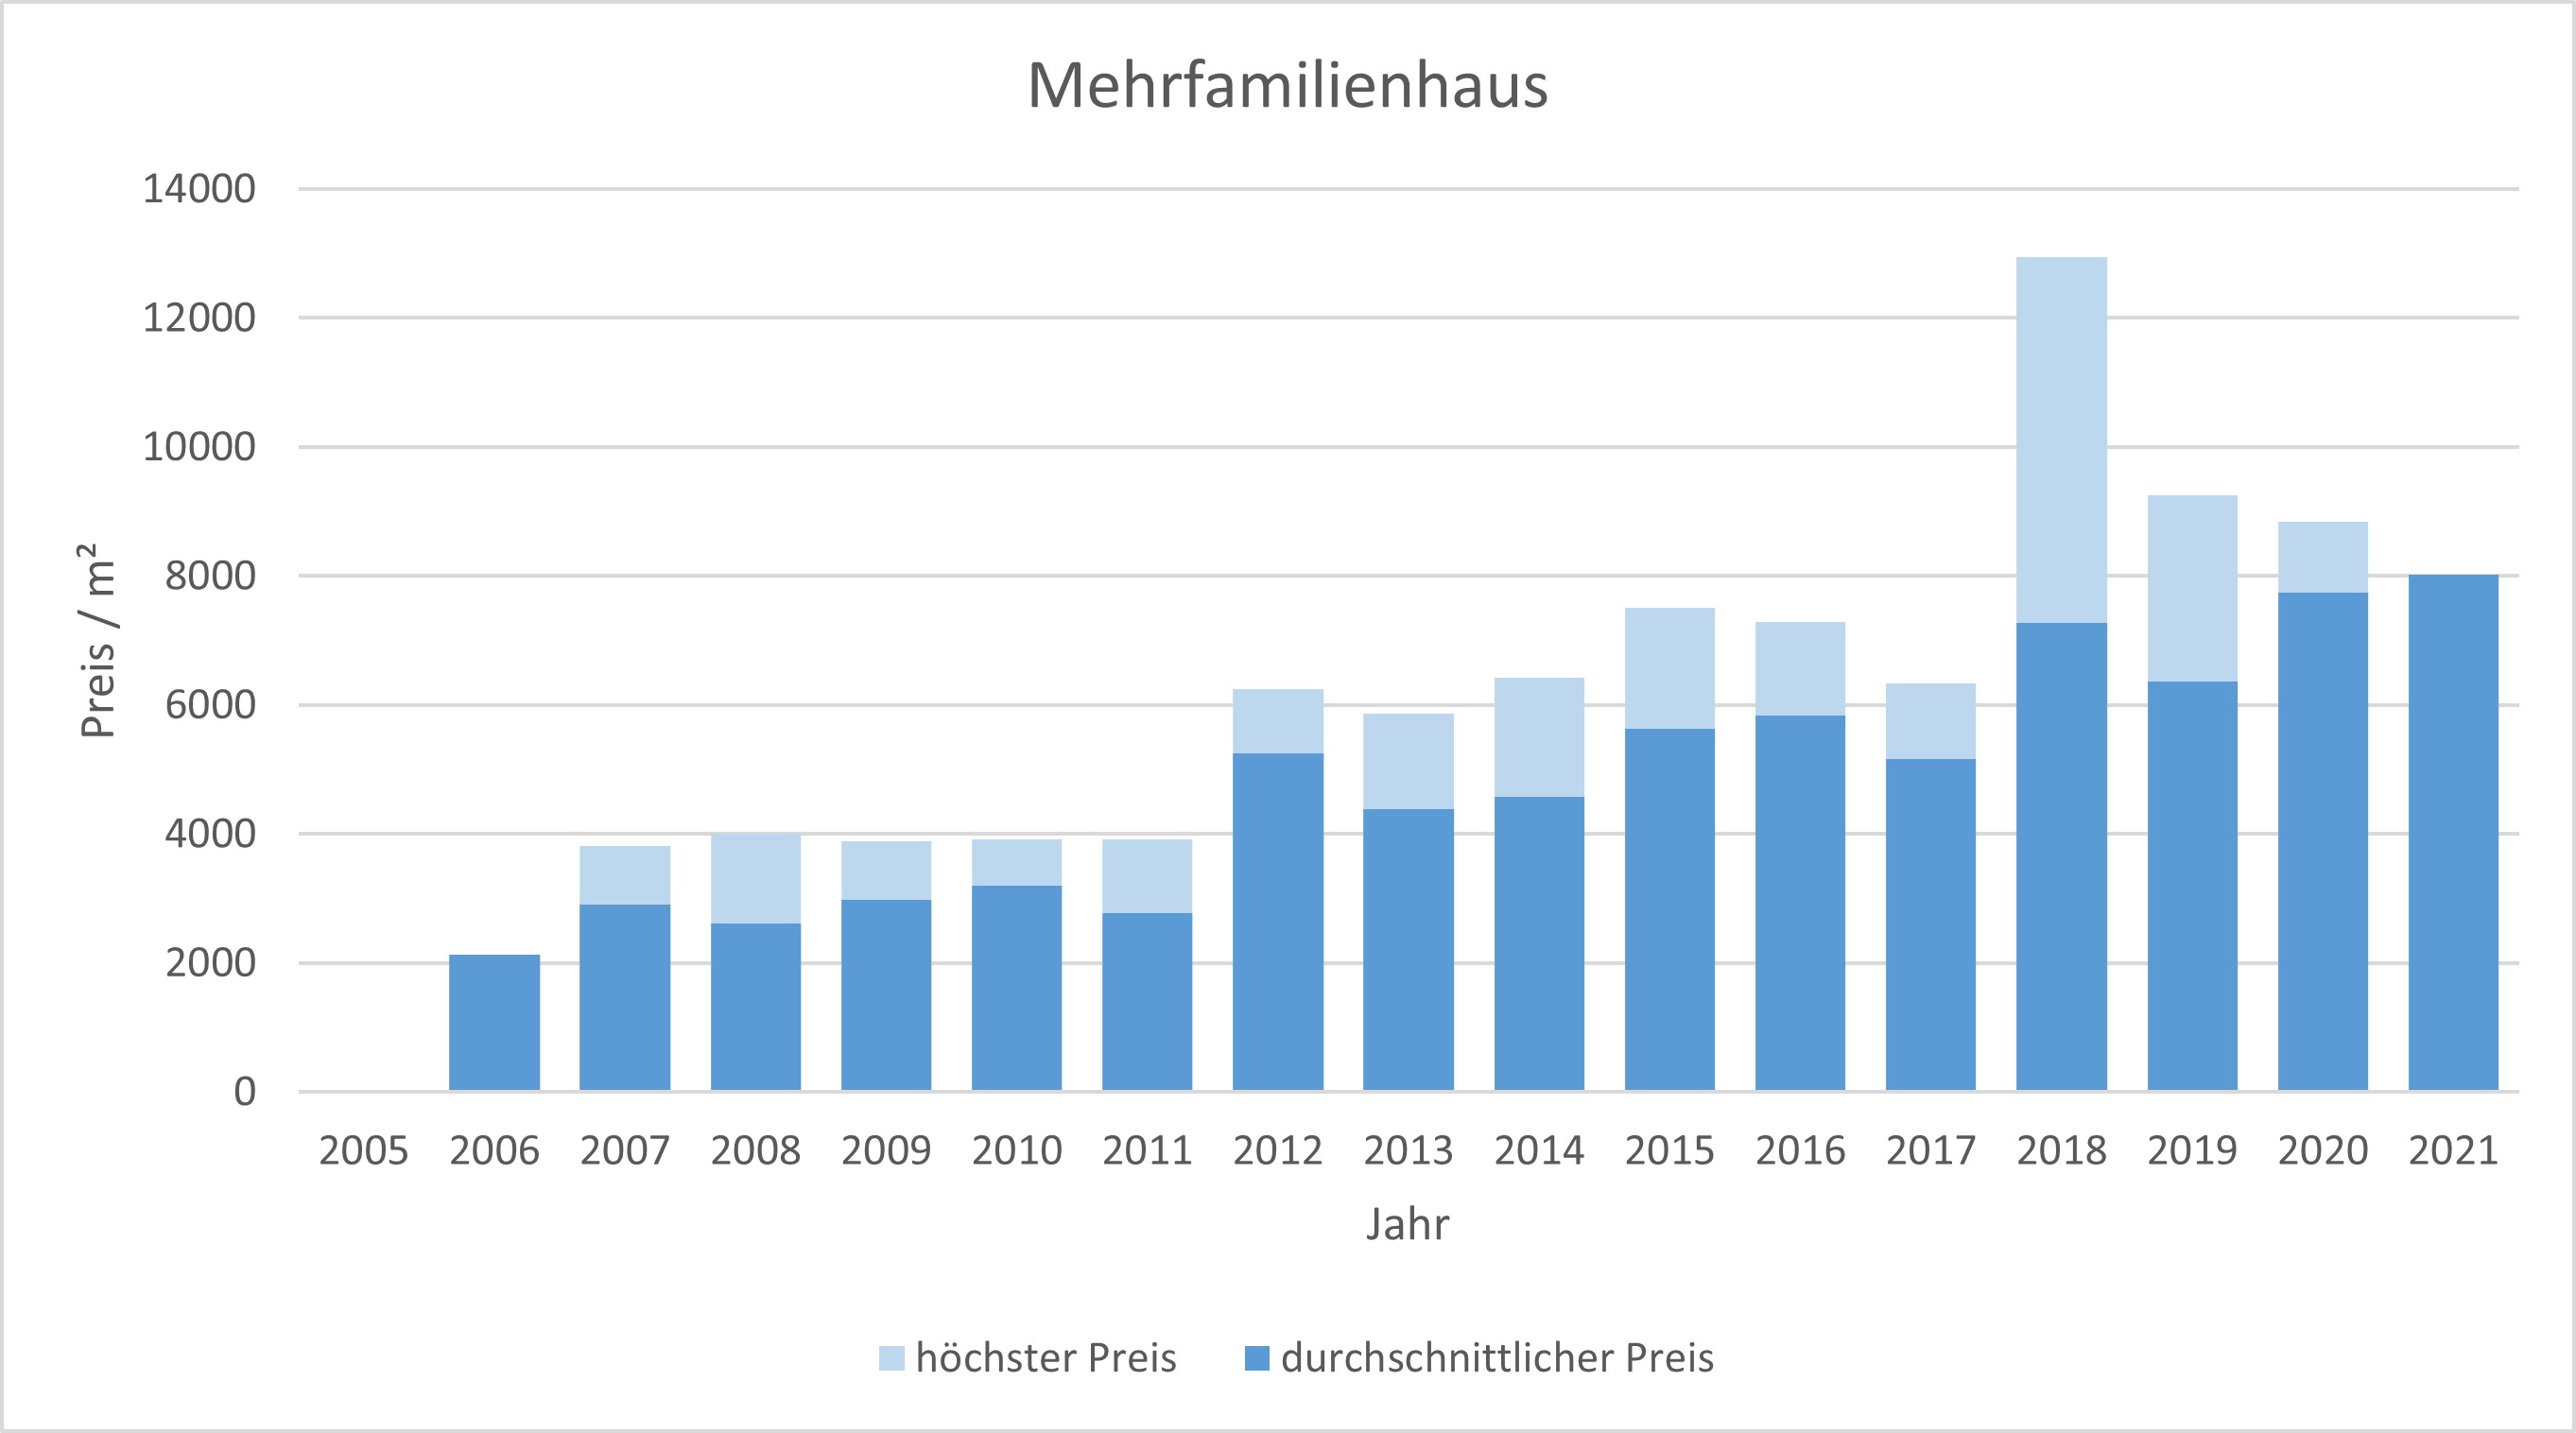 München - Ramersdorf Mehrfamilienhaus kaufen verkaufen Preis Bewertung Makler 2019 2020 2021 www.happy-immo.de